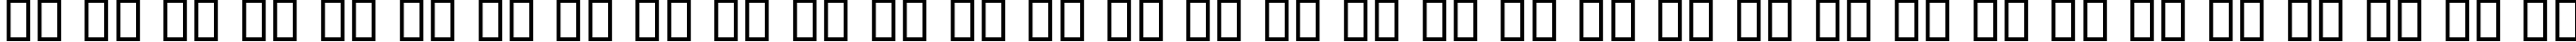 Пример написания русского алфавита шрифтом B Nasim Bold